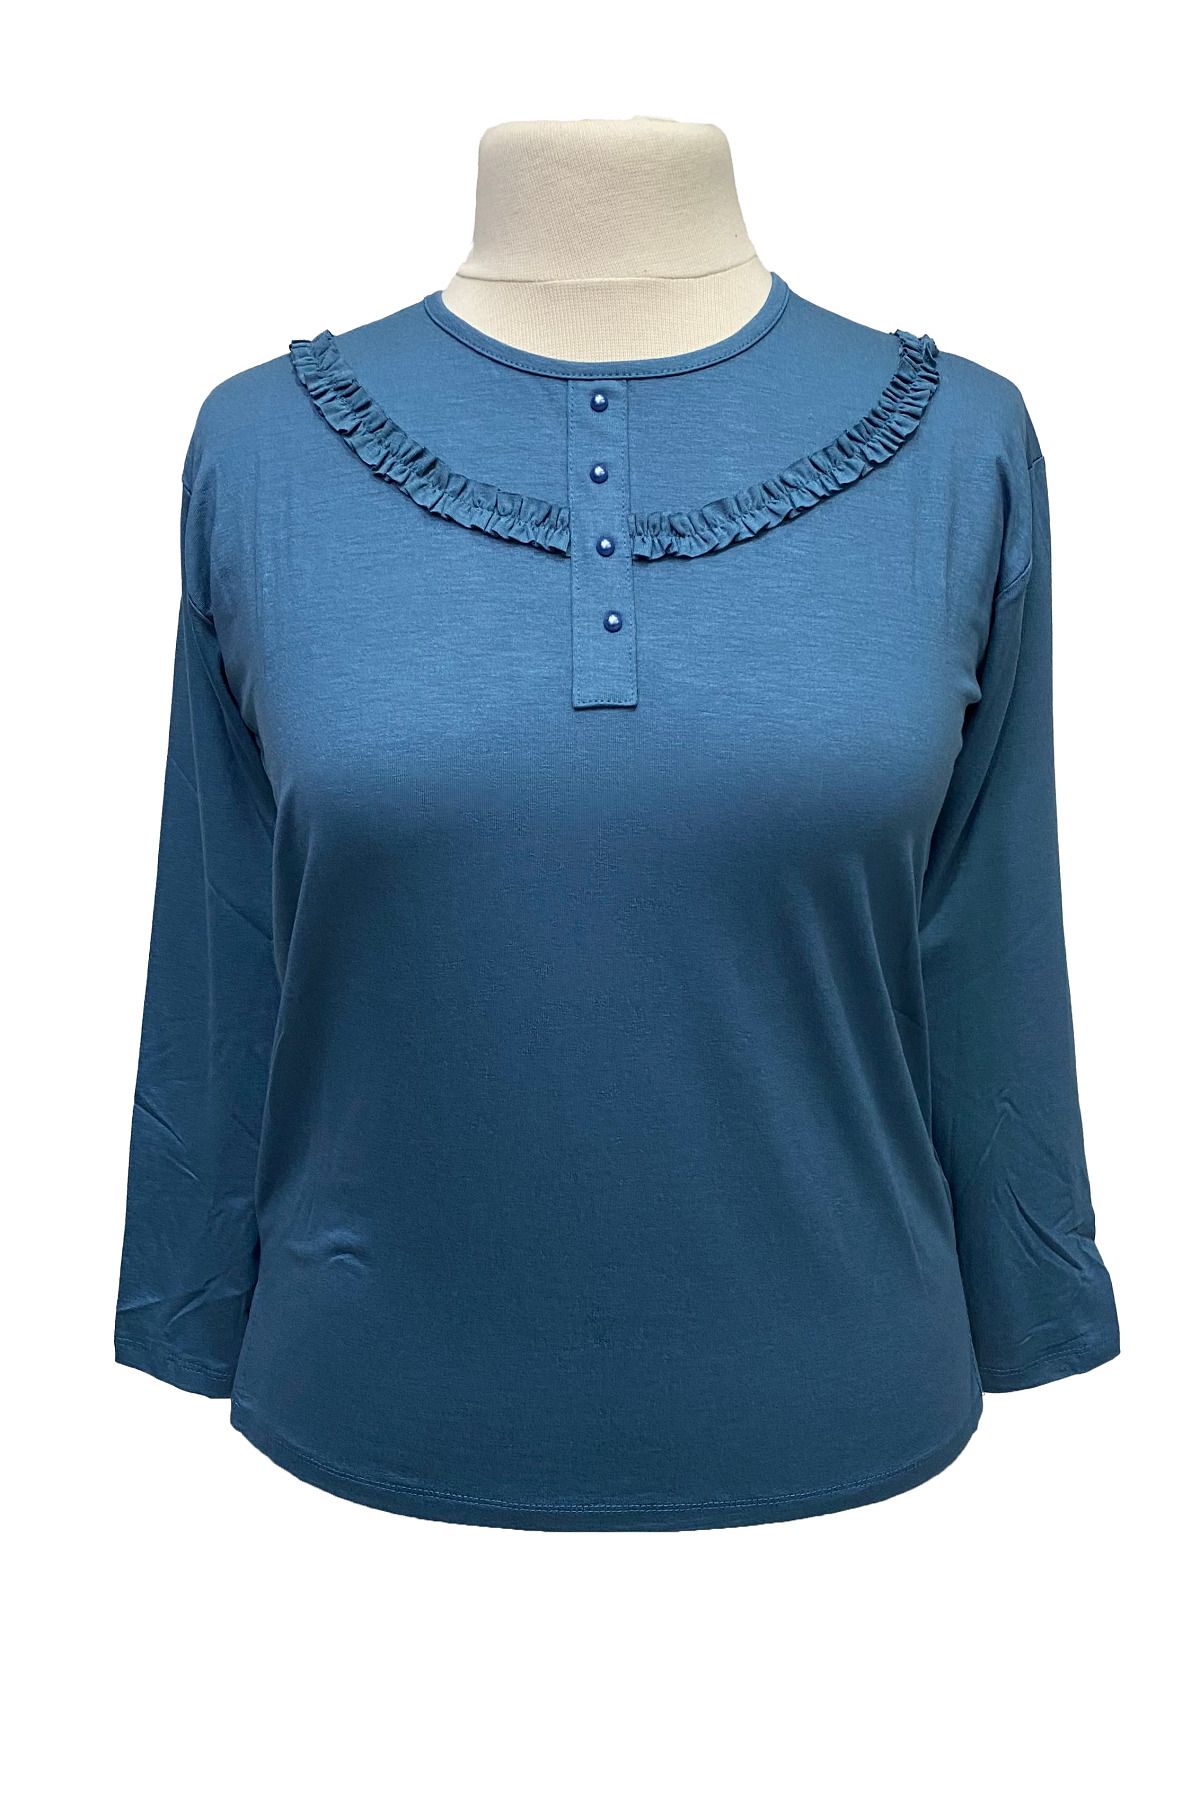 Giyinen Mağazaları Açık Mavi Derya Yuvarlak Yaka Fırfır Detaylı Penye Bluz